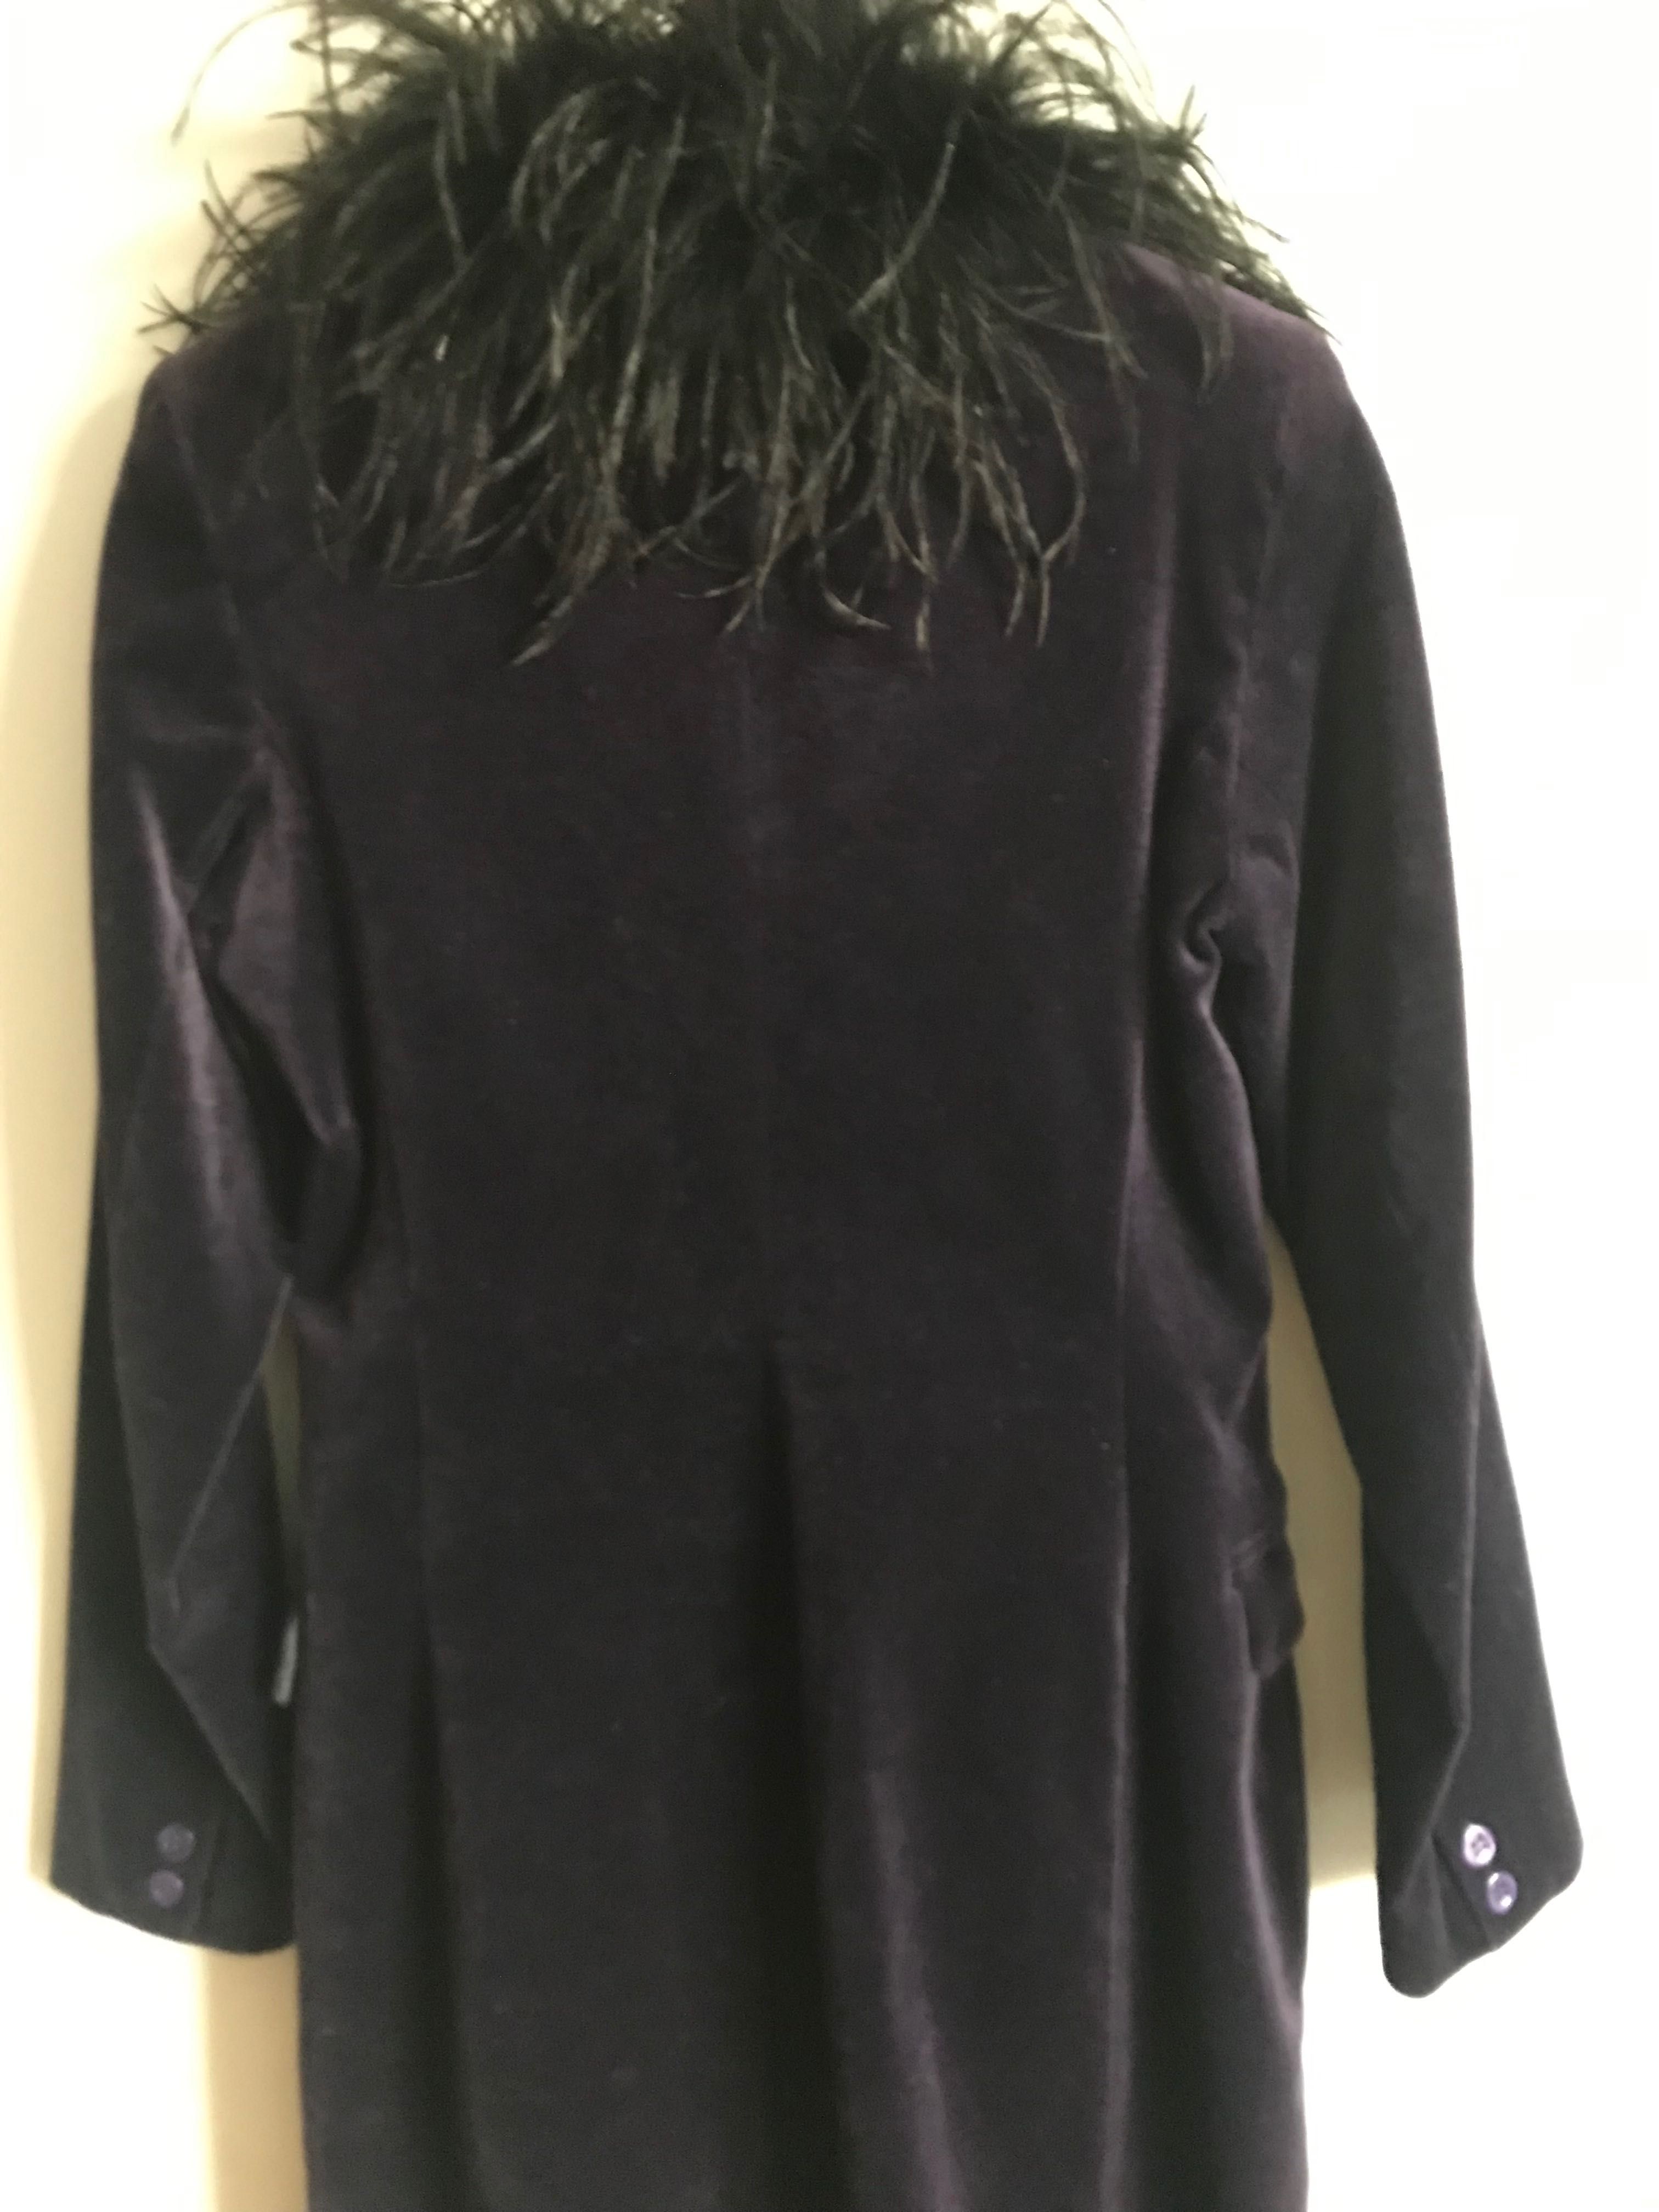 Fioletowy aksamitny płaszcz S z piórami strusia styl lat 70 tych